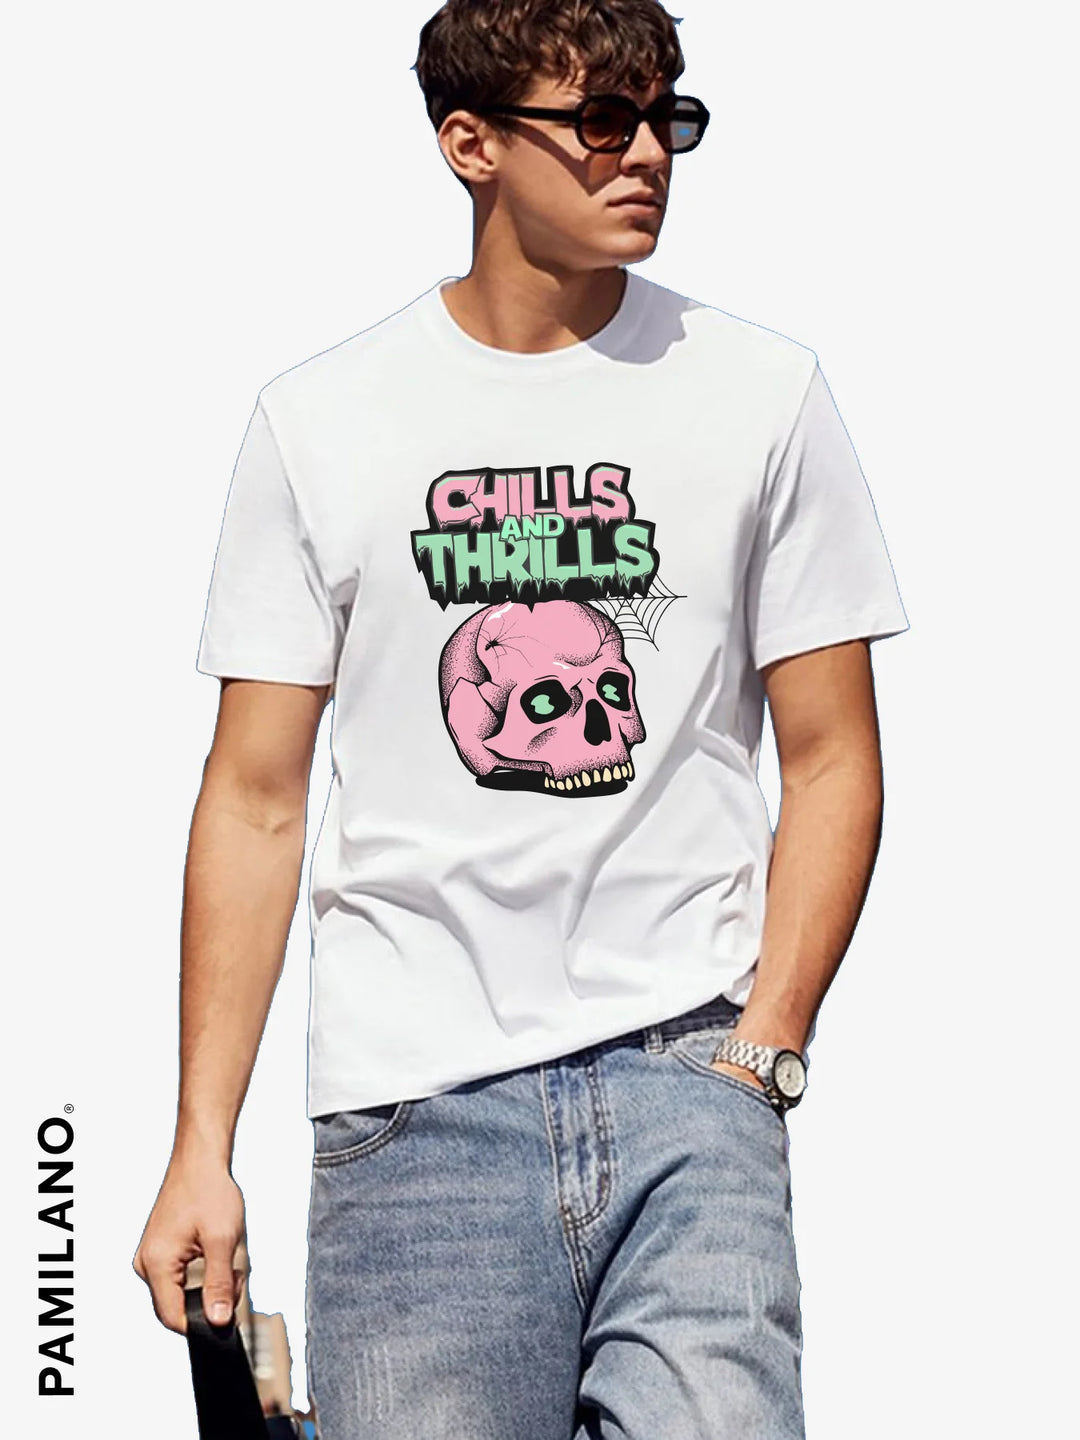 Chills And Thrills - Unisex T-Shirt